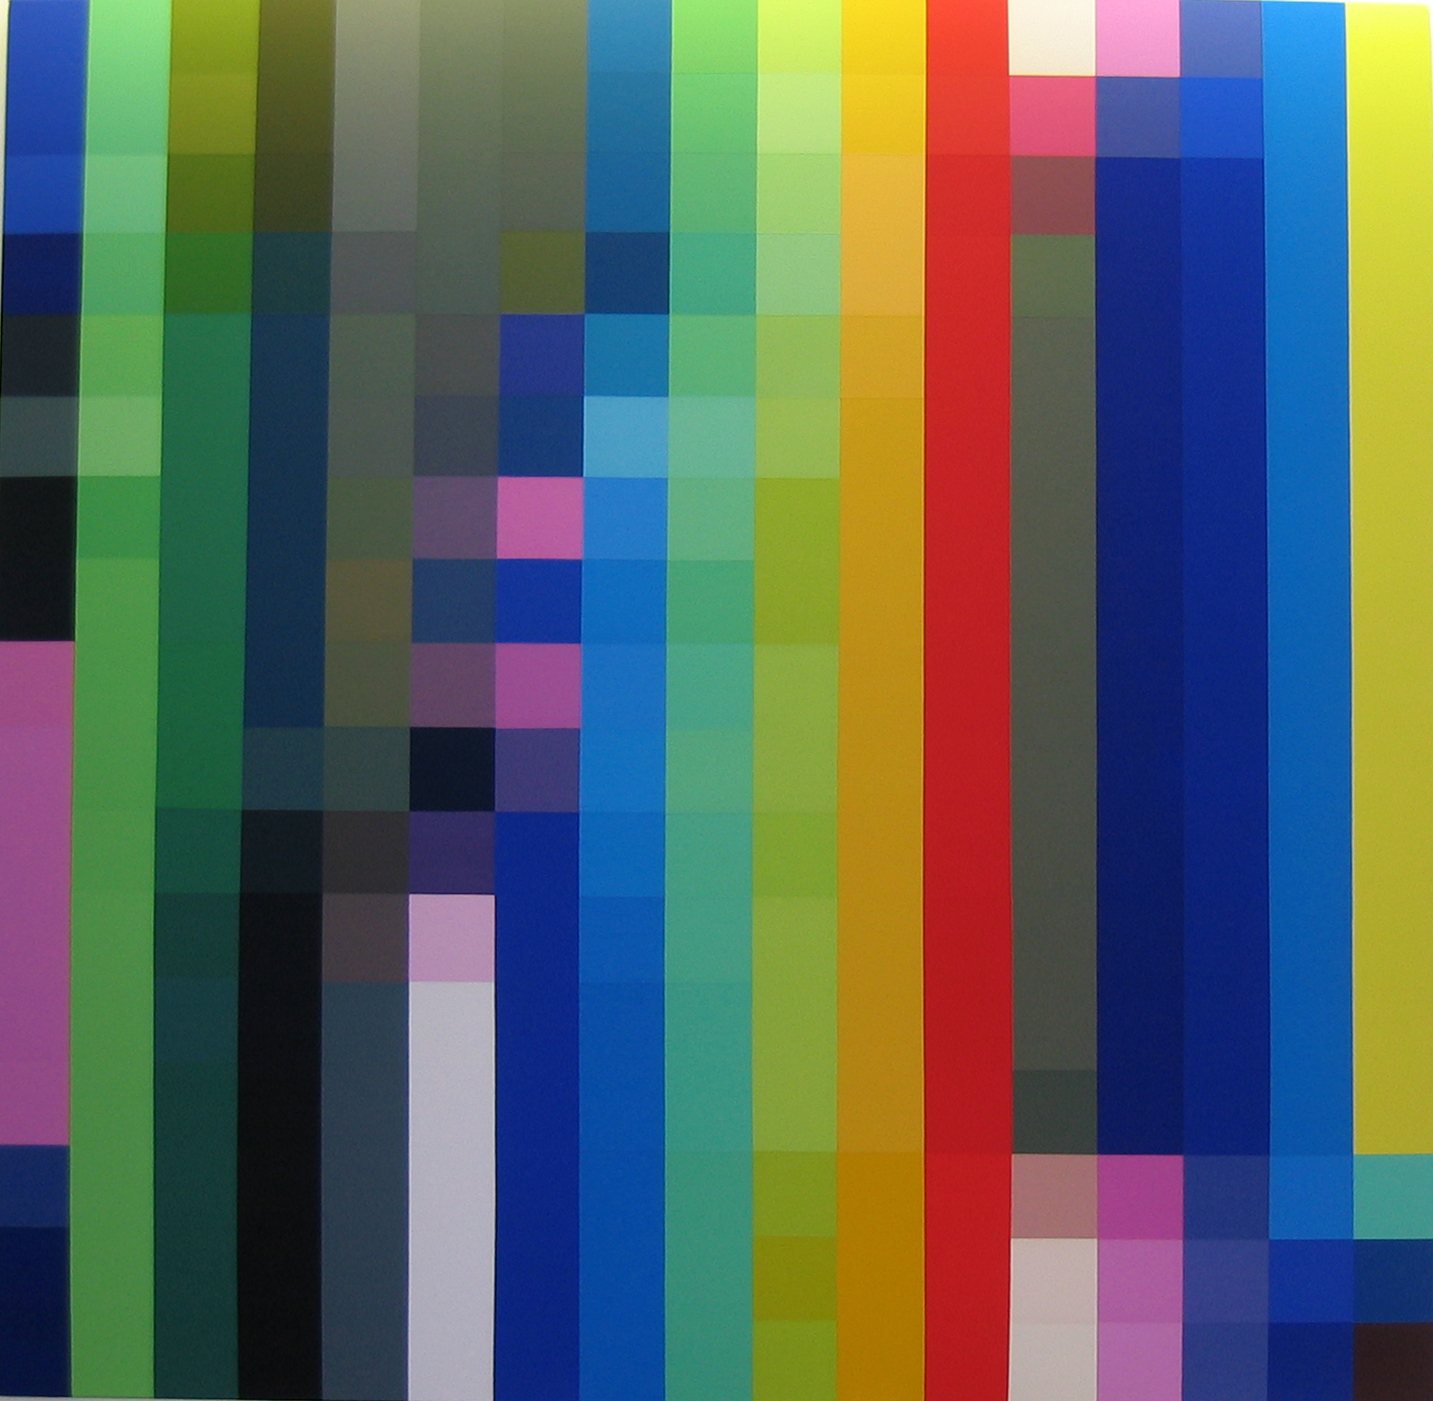   ROBERT OWEN     Spectrum Analysis #9  2004 polymer paint on linen 224 x 102 cm  